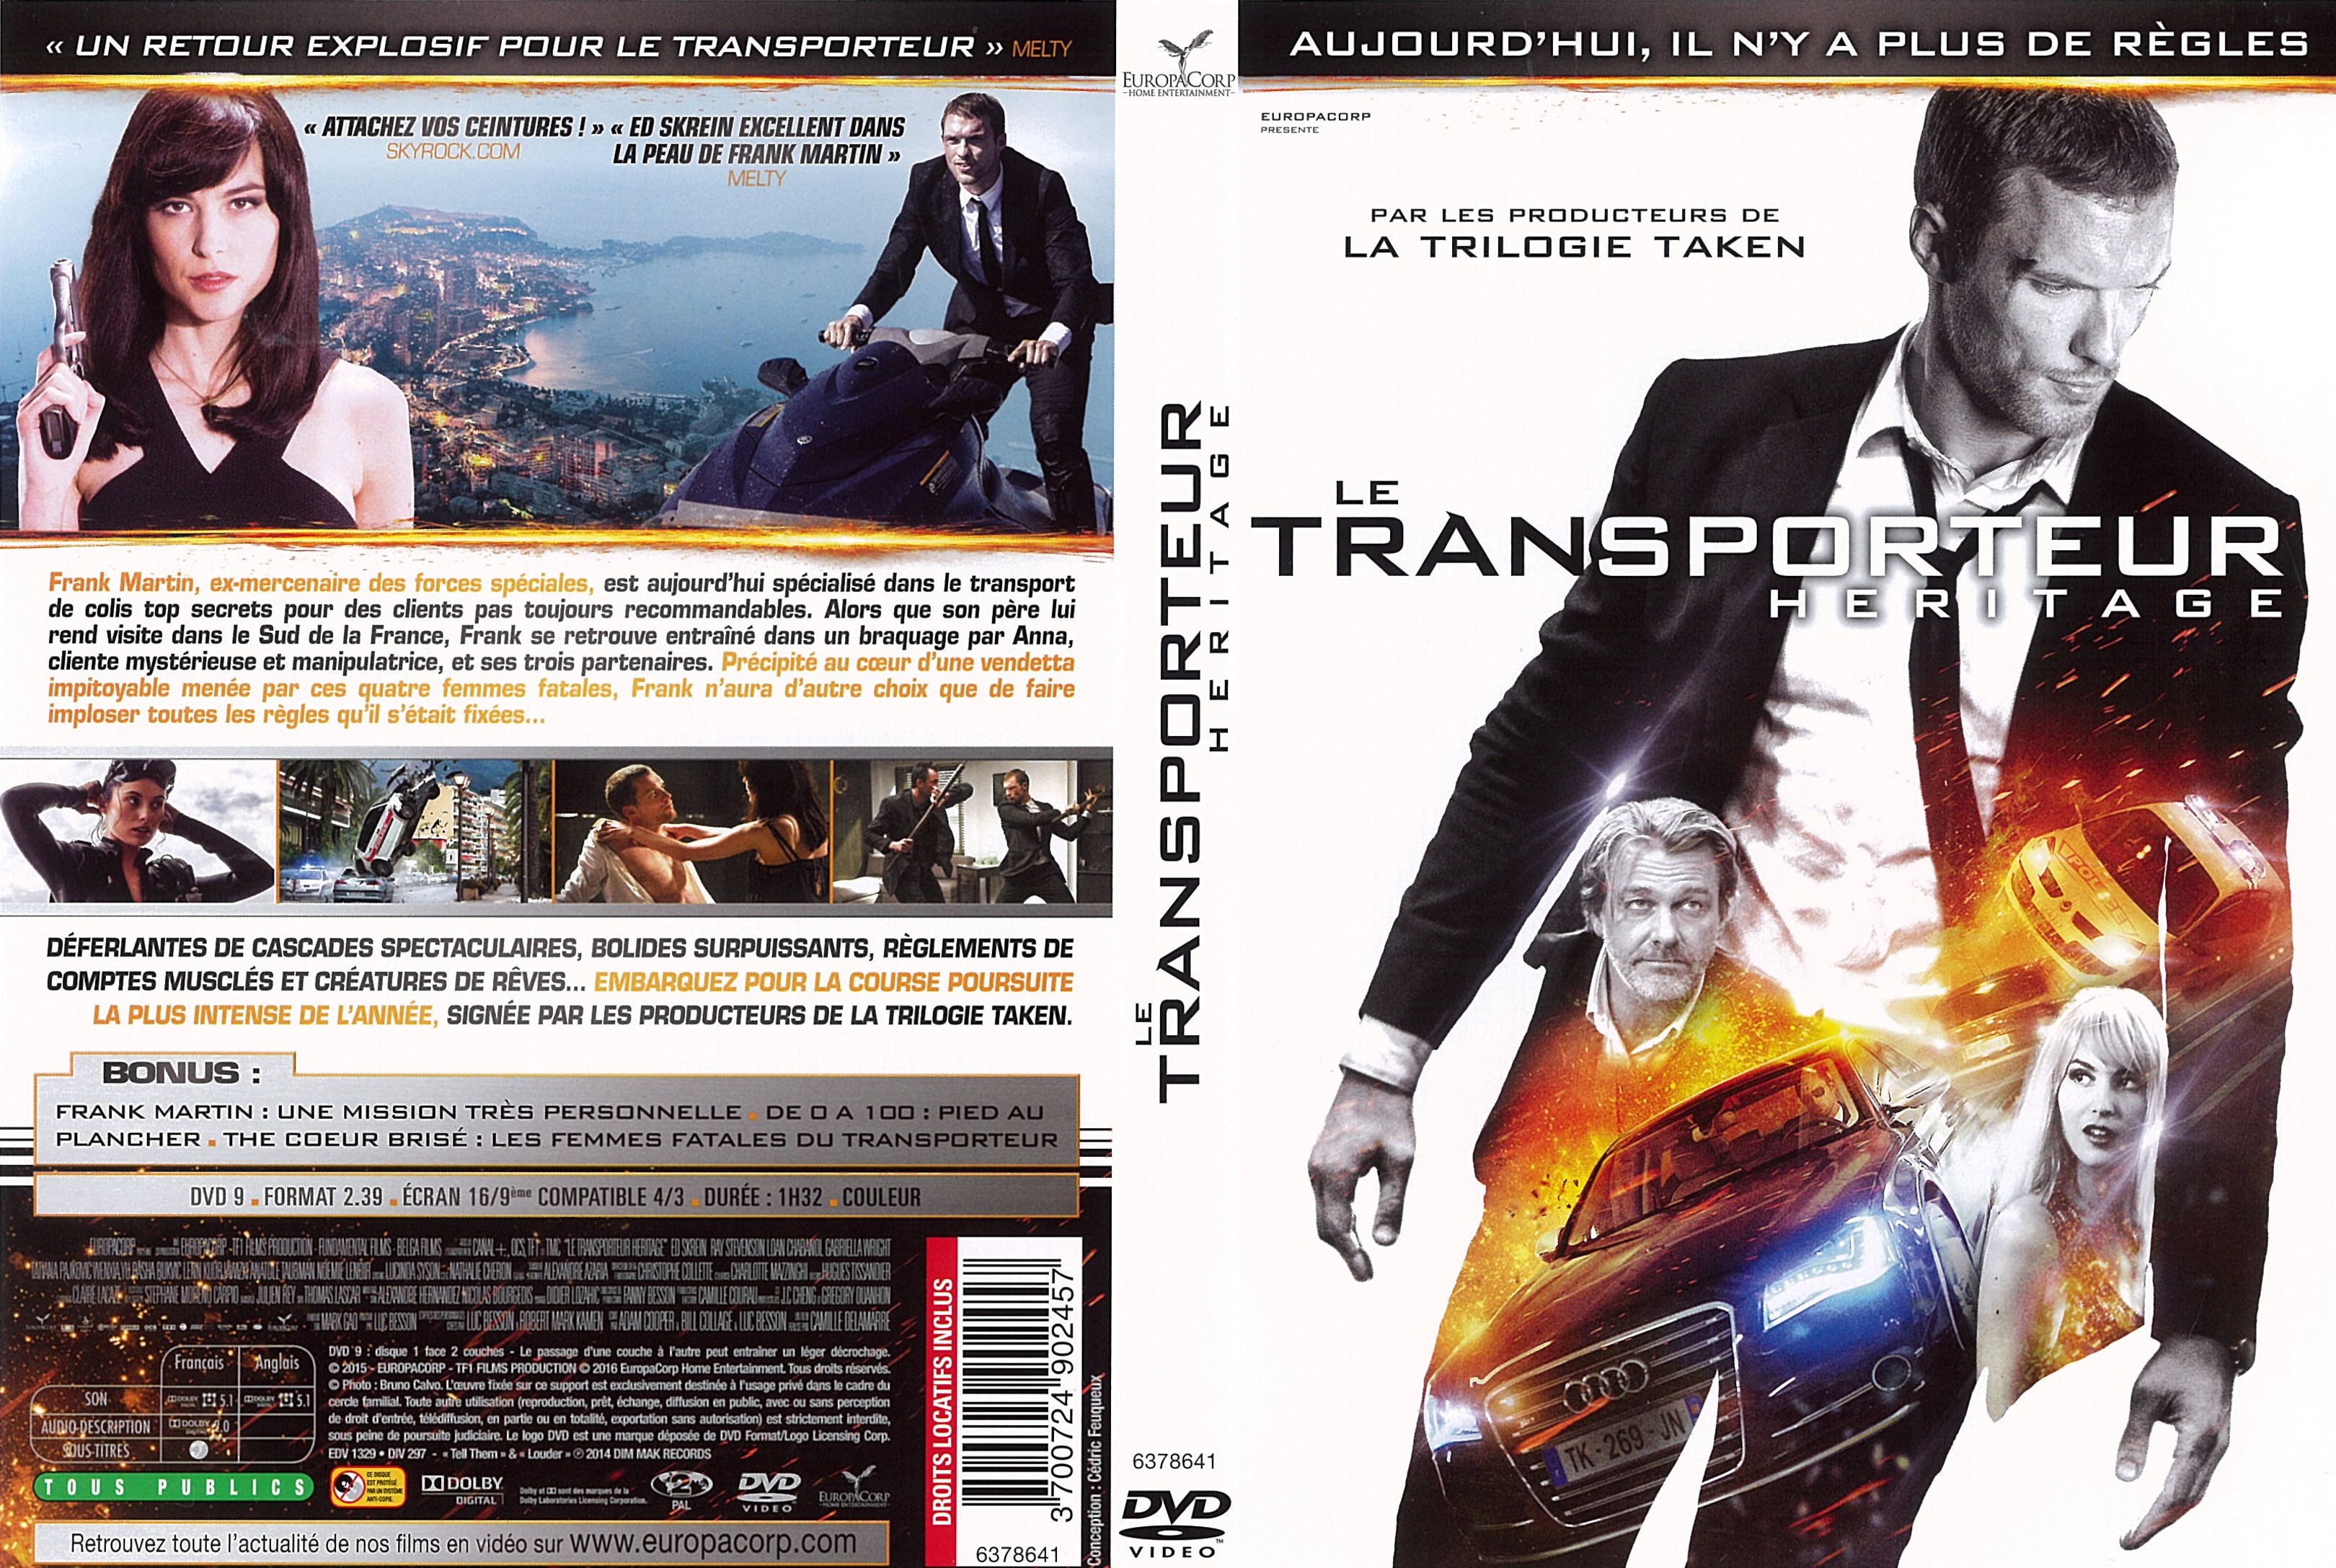 Jaquette DVD Le Transporteur Hritage